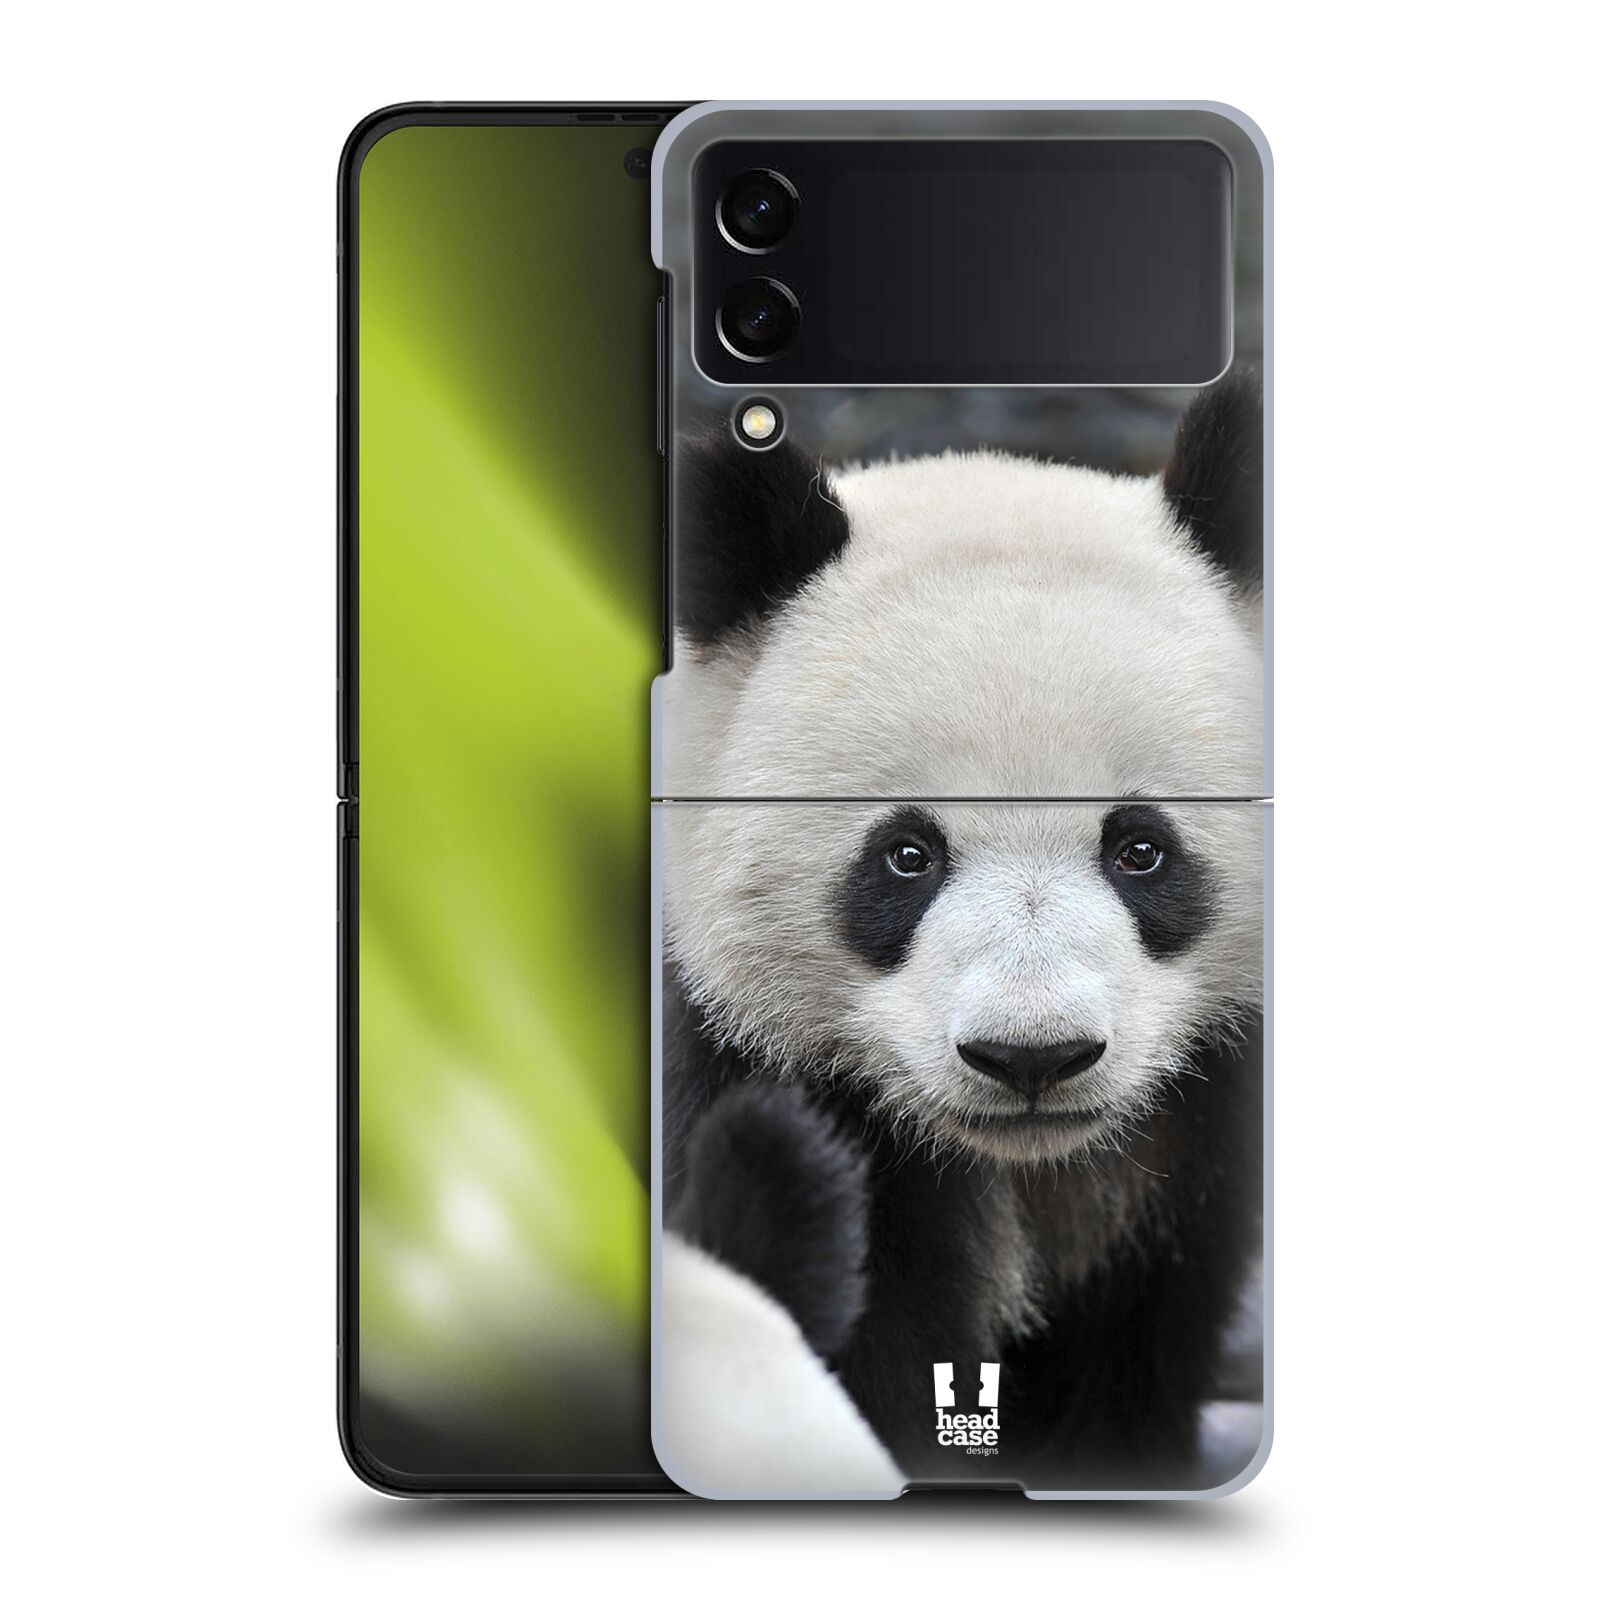 Zadní obal pro mobil Samsung Galaxy Z Flip 4 - HEAD CASE - Svět zvířat medvěd panda